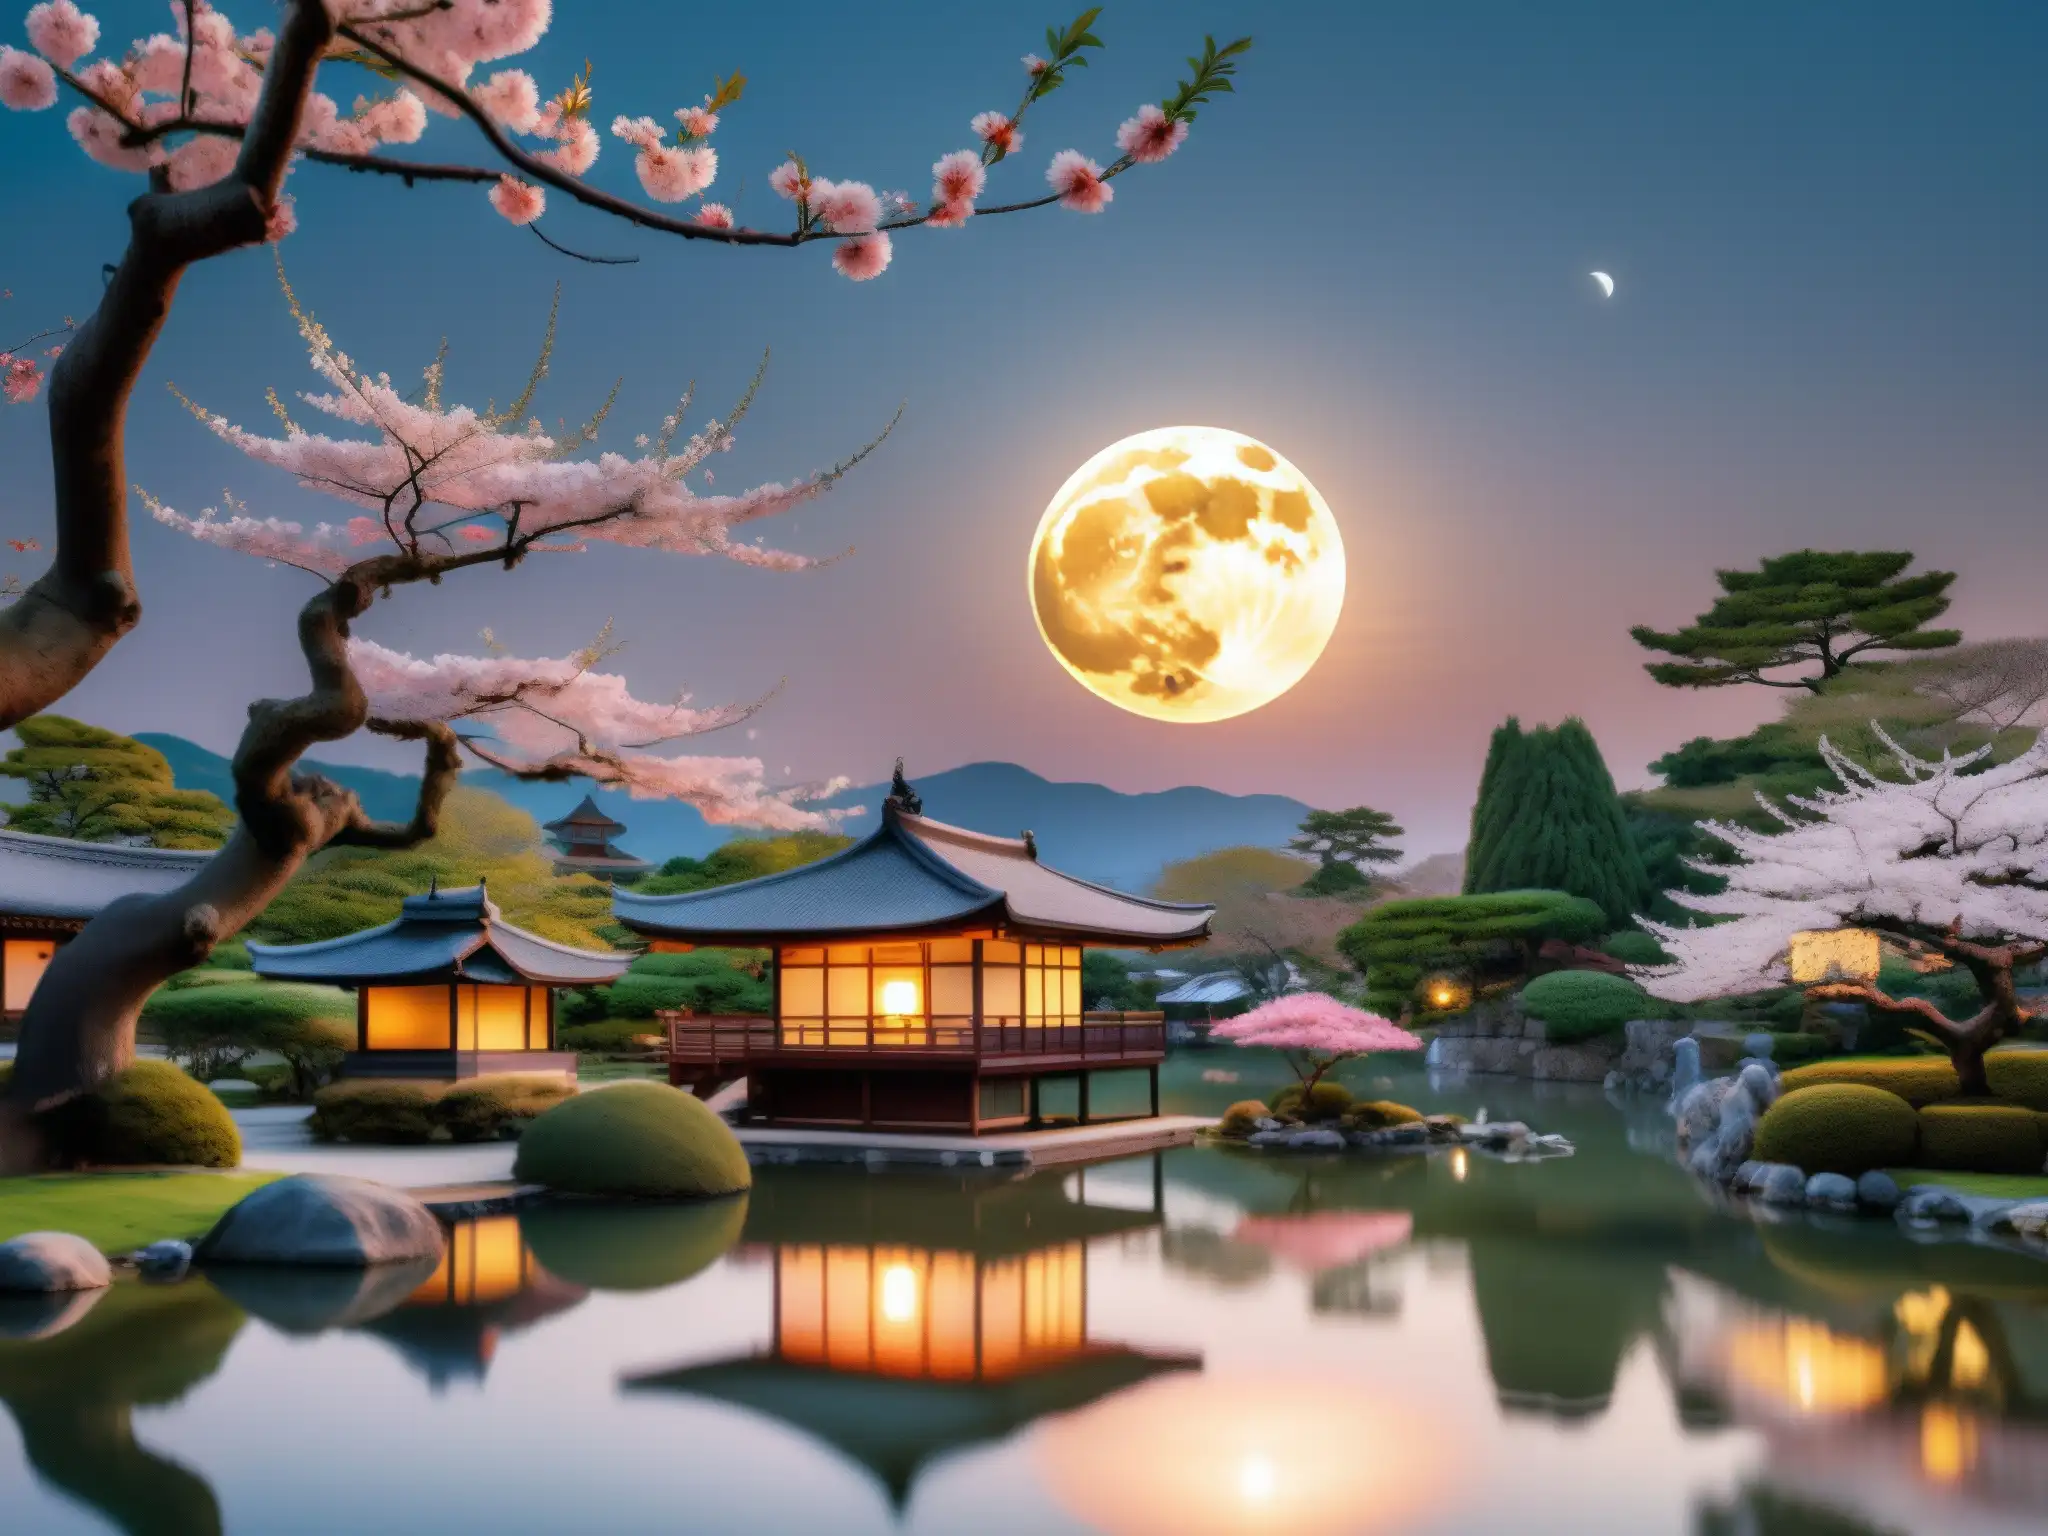 Una escena mágica de la luna llena sobre un jardín japonés, con un toque de misterio y encanto, perfecta para Tsukuyomi leyendas urbanas luna llena